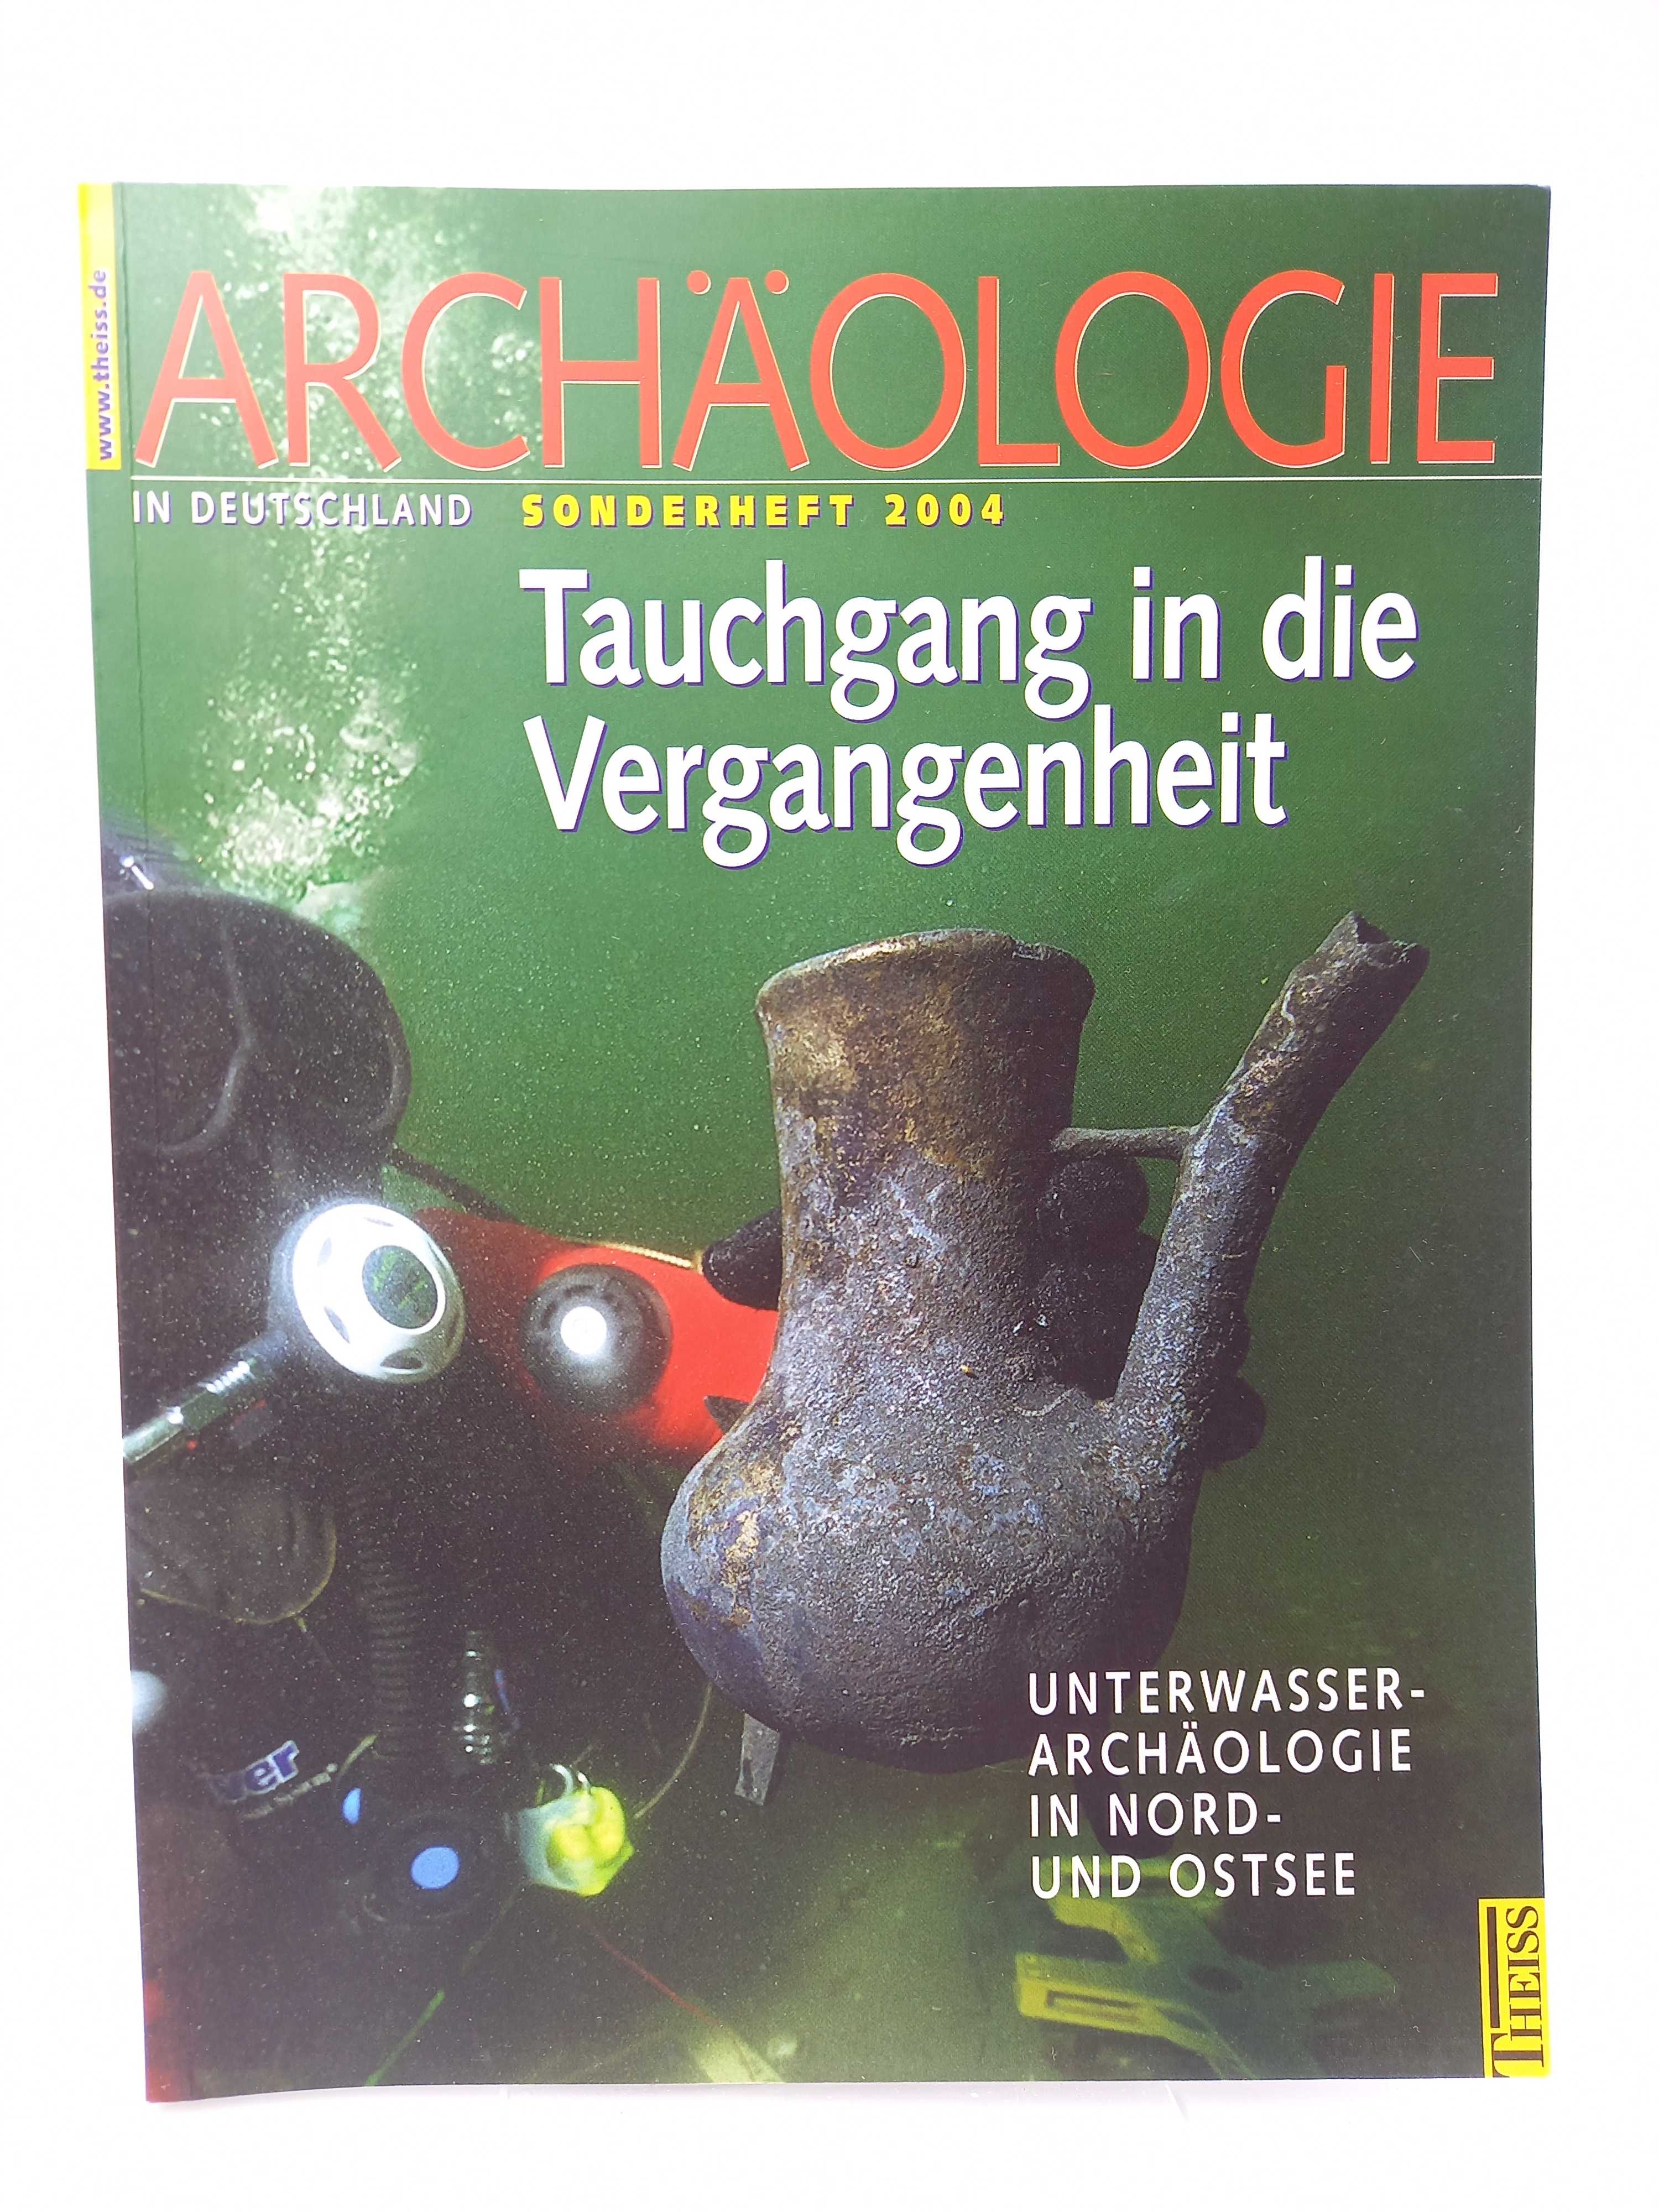 Tauchgang in die Vergangenheit Unterwasserarchäologie in Nord- und Ostsee (Archäologie in Deutschland, Sonderheft 2004) - Lüth, Friedrich / Thijs J. Maarleveld u.a. (Hg.) -